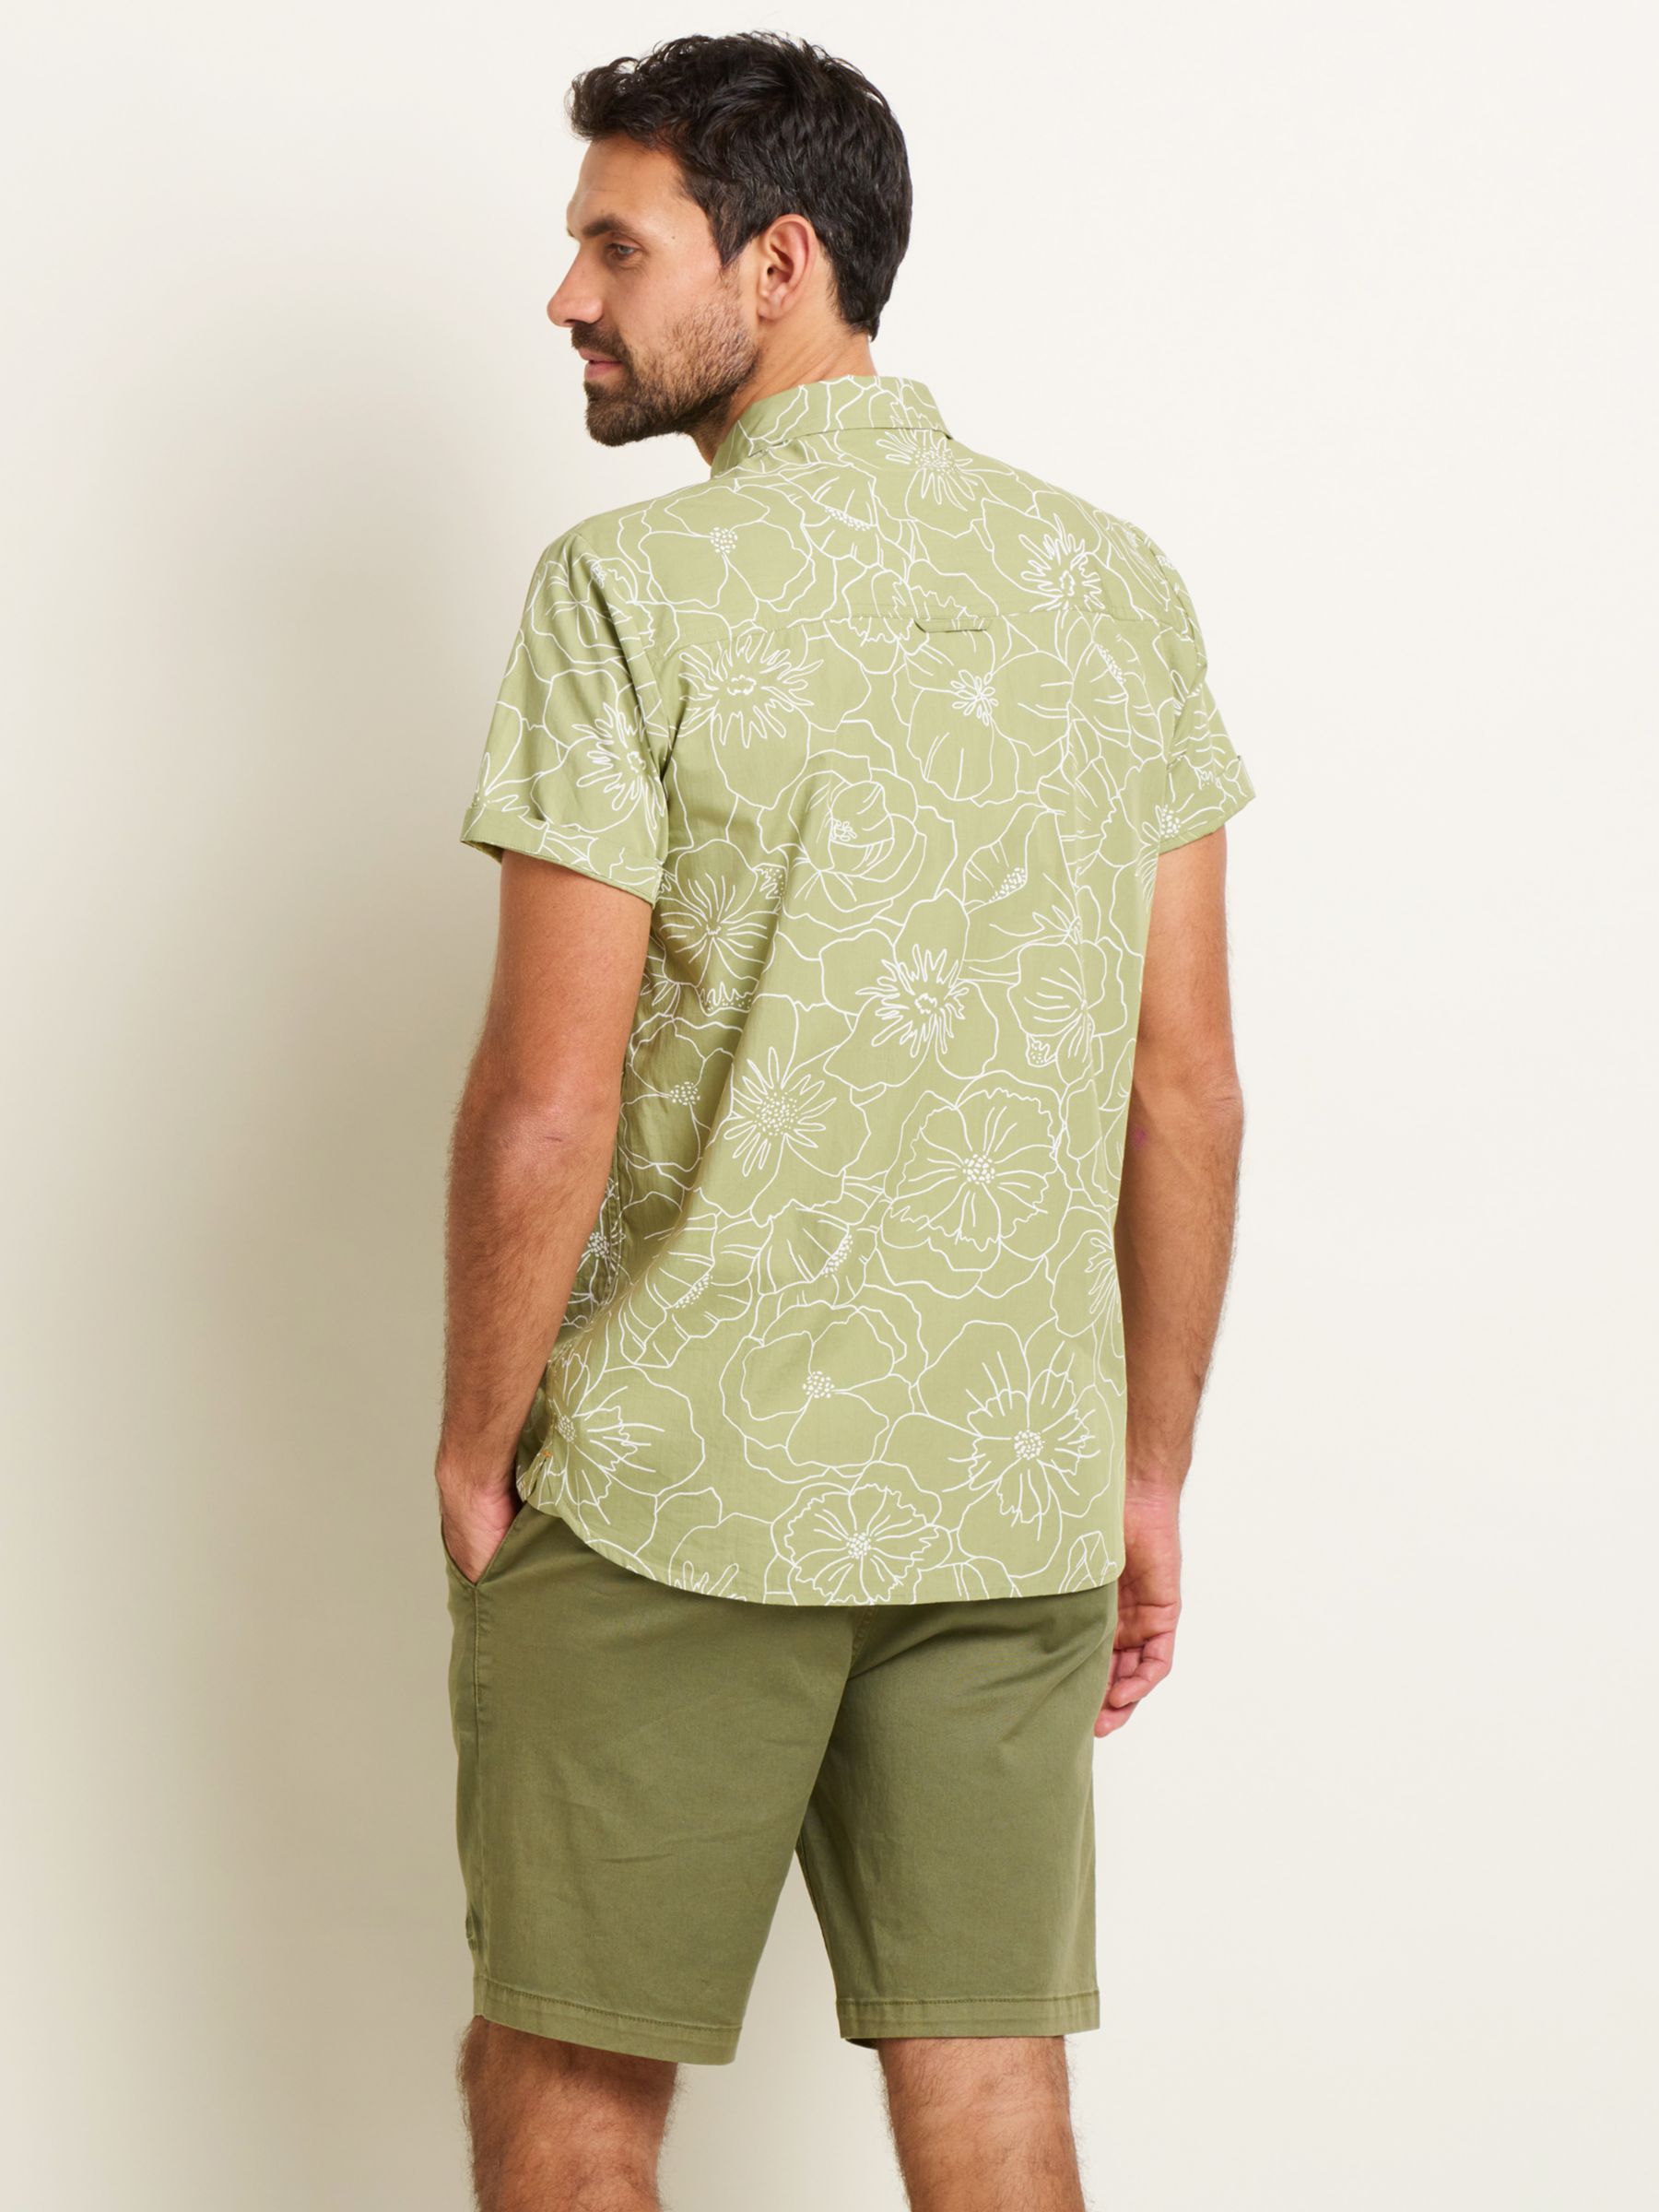 Brakeburn Linear Floral Shirt, Green/White, XL